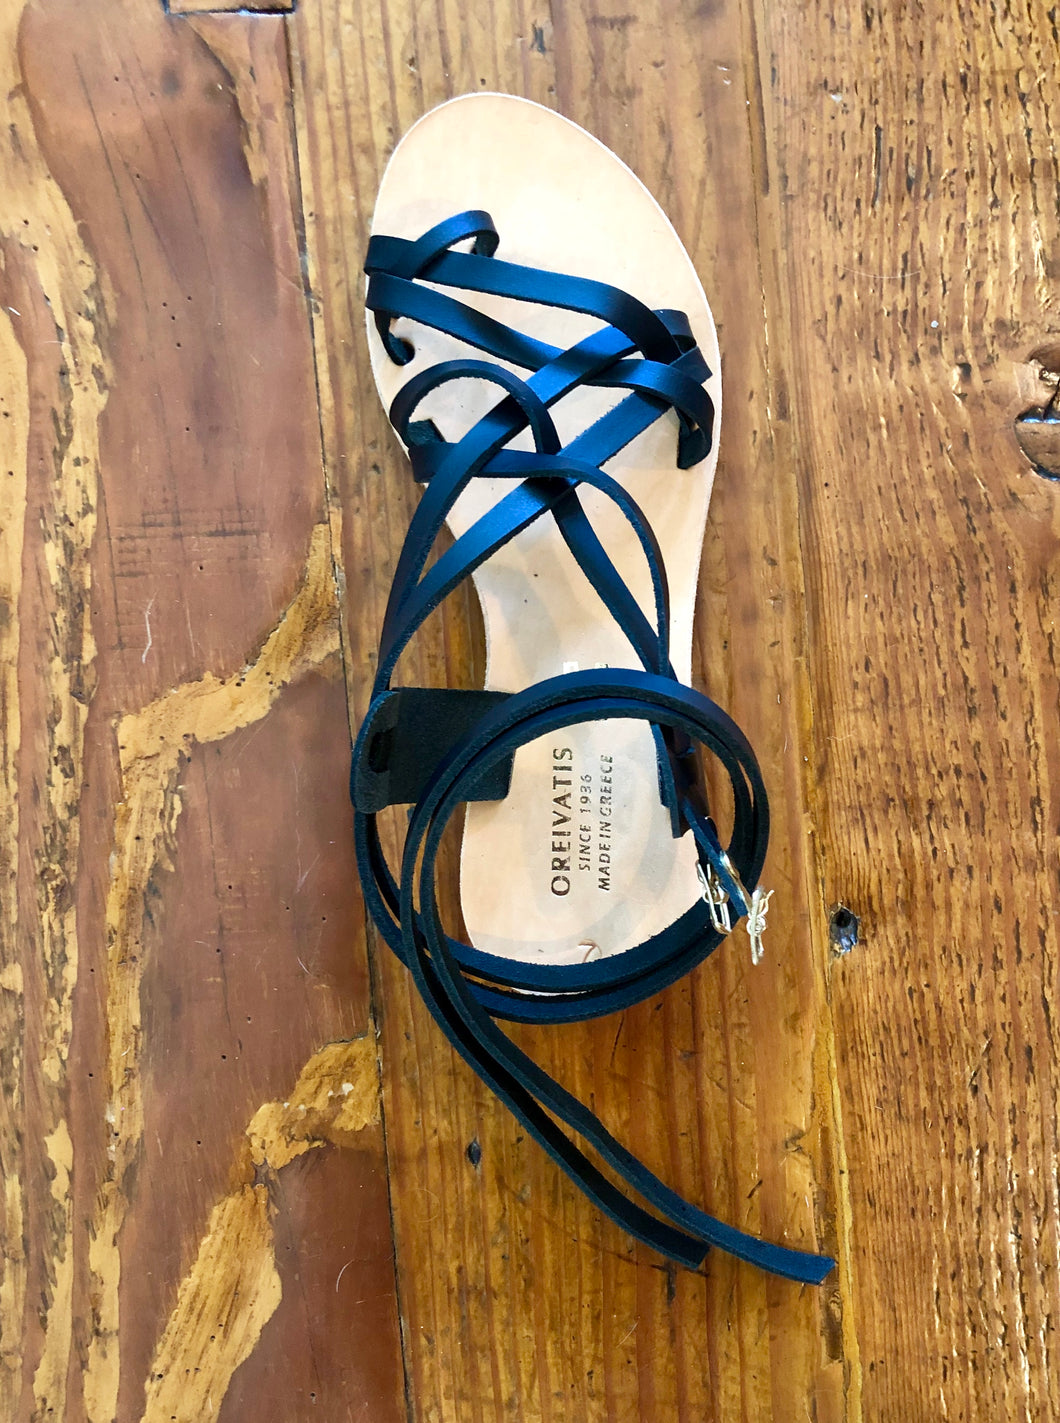 Original Handmade Greek Sandals - Strappy